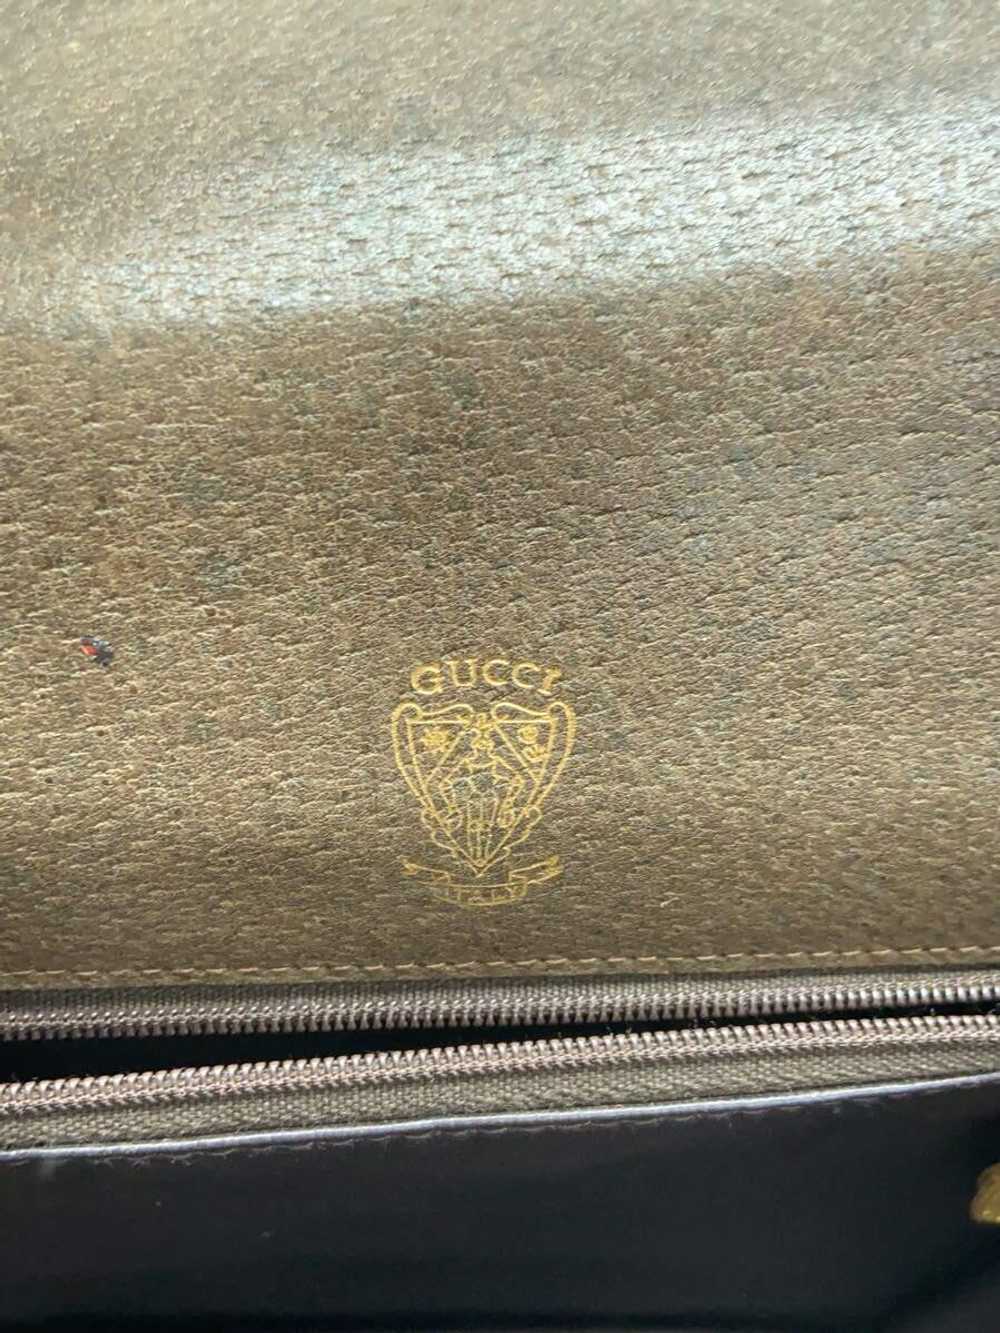 Used Gucci Shoulder Bag/--/Brw Bag - image 5